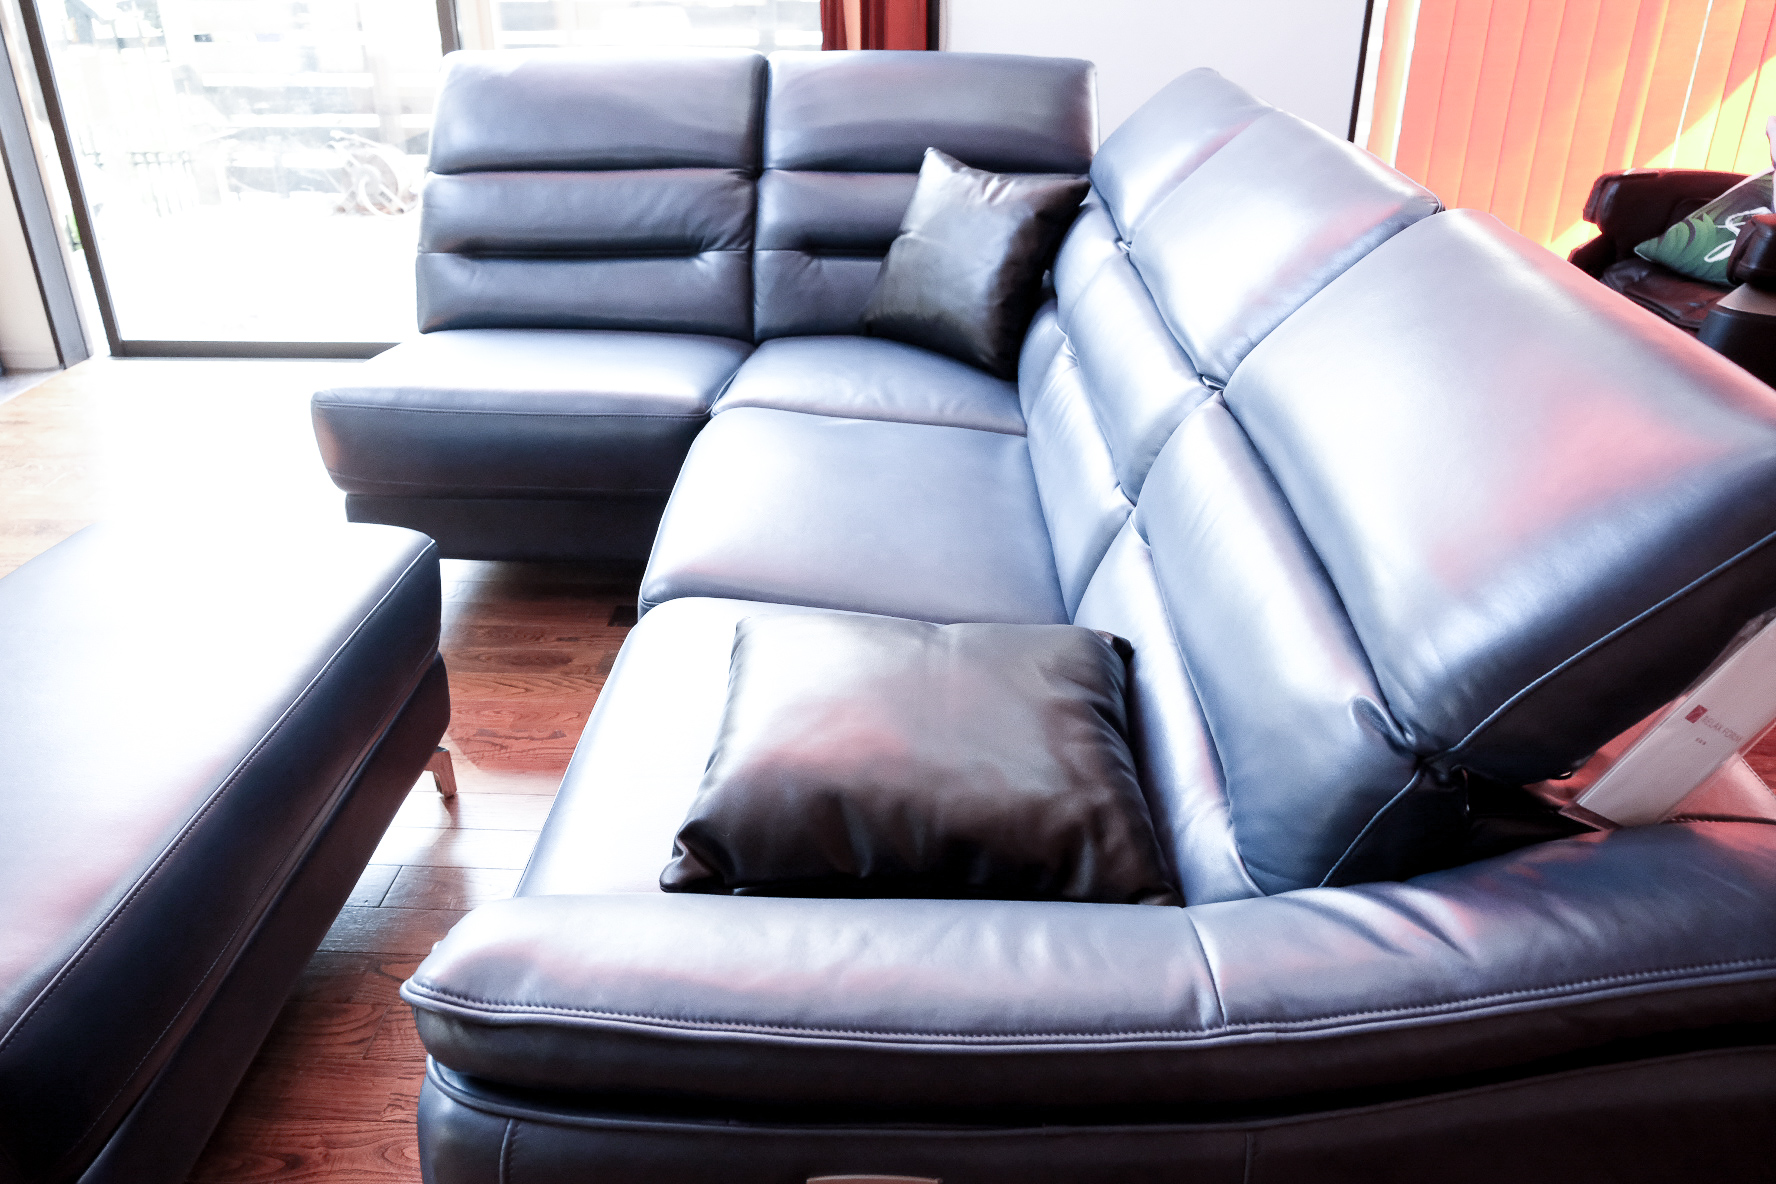 使いやすさとデザインの良いとこどり。リラックスフォームの『sophia sofa(ソフィアソファ)』